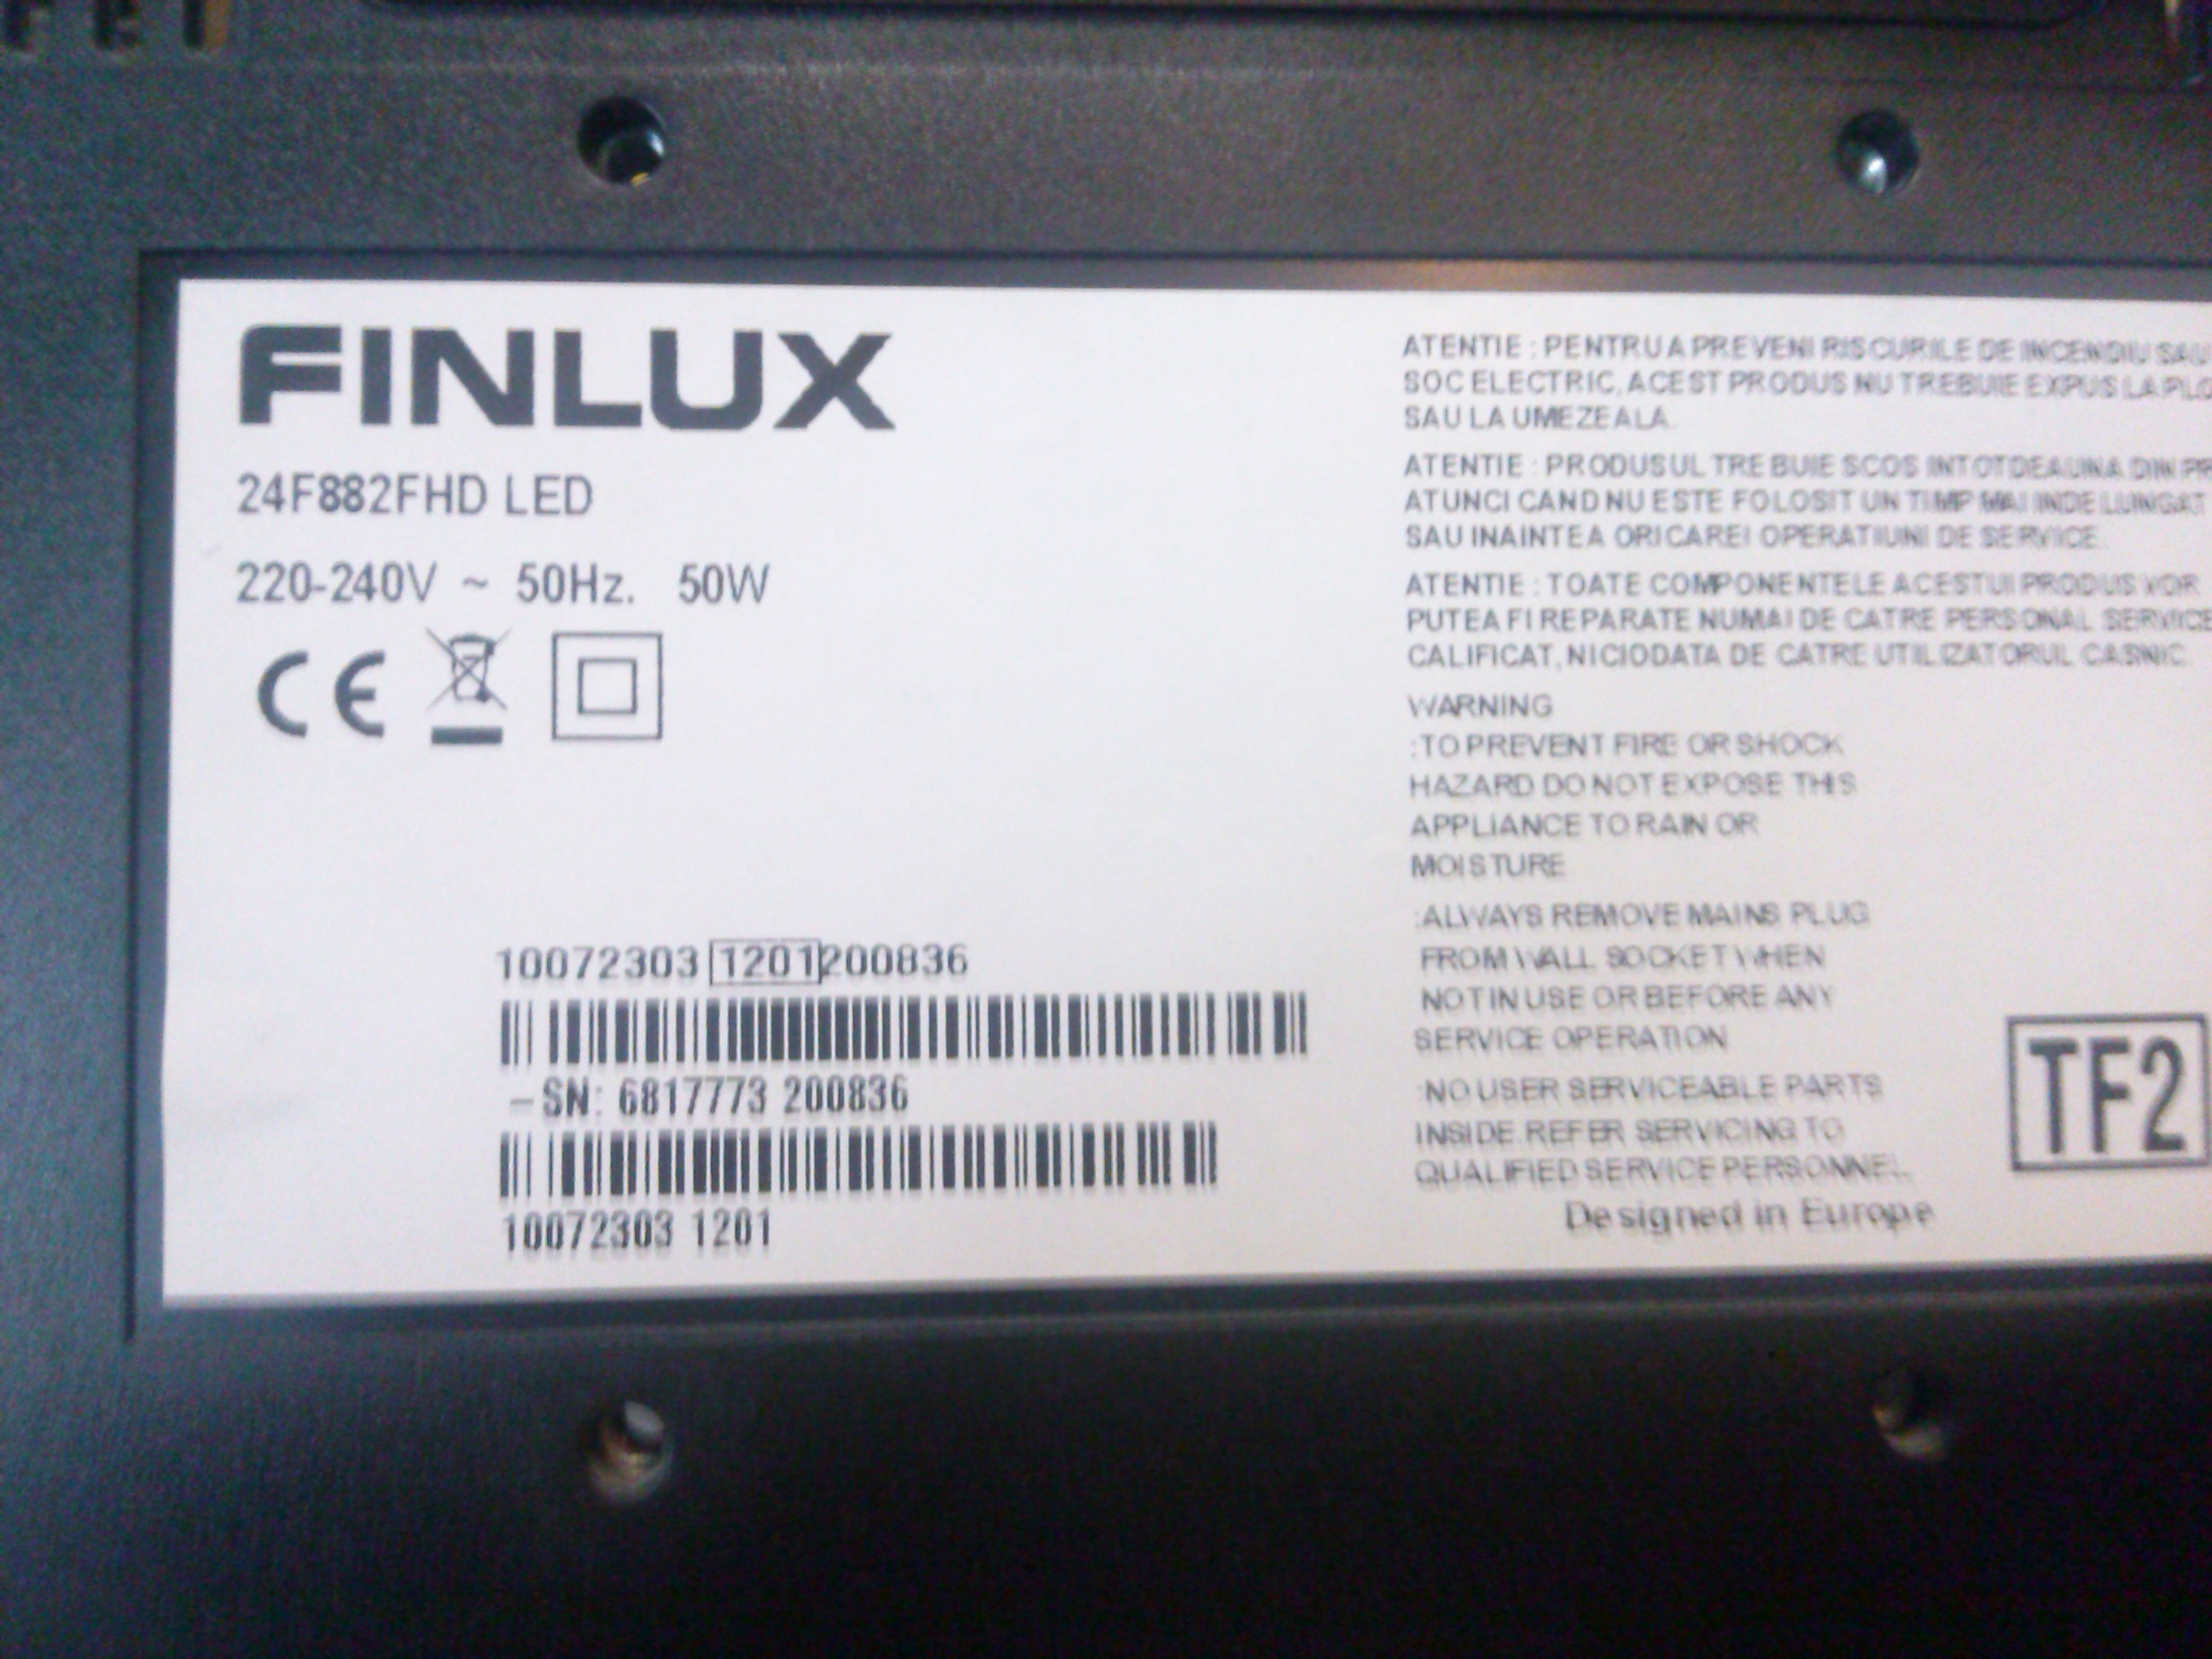 Finlux 24F882FHD 17MB60 4.1